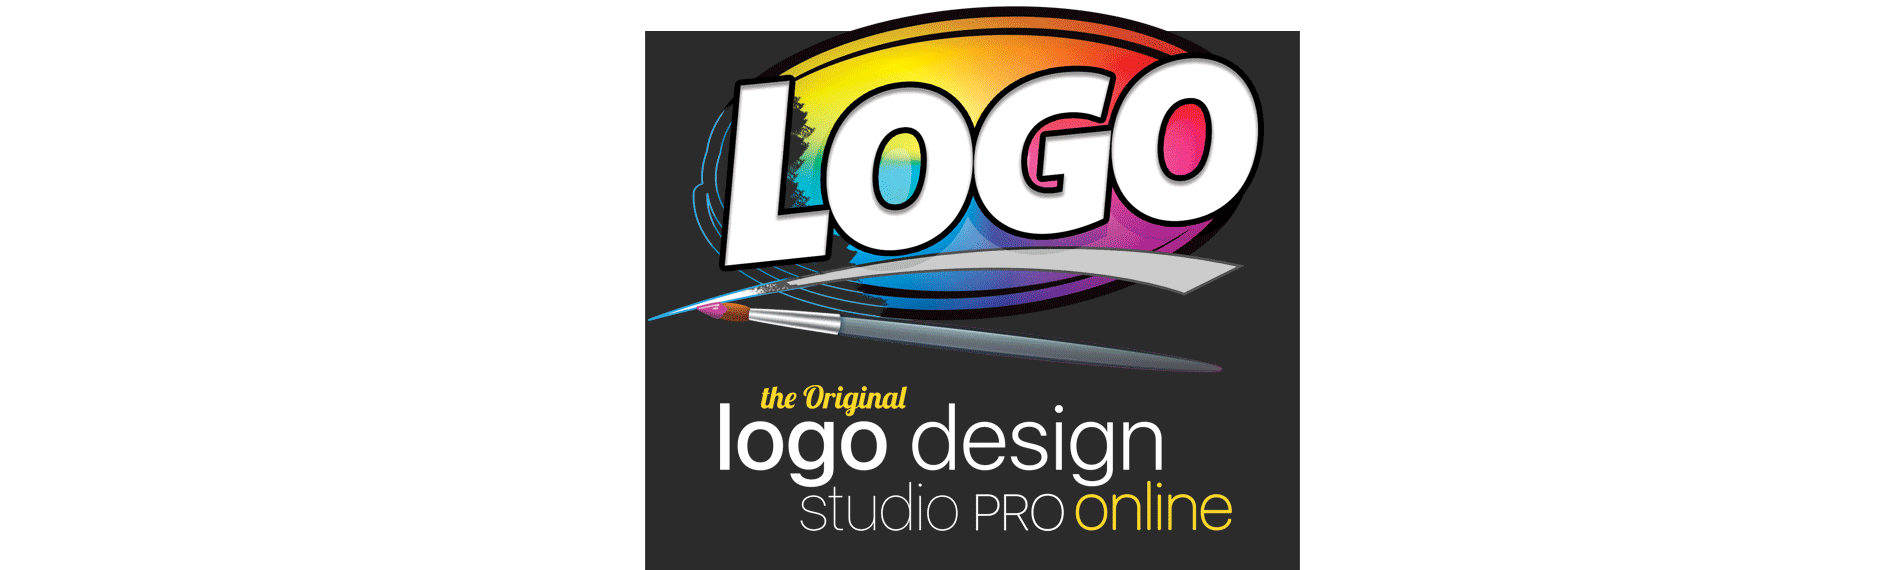 Google Software Logo - Logo Design Studio Pro Online | #1 Selling Logo Software for over 15 ...